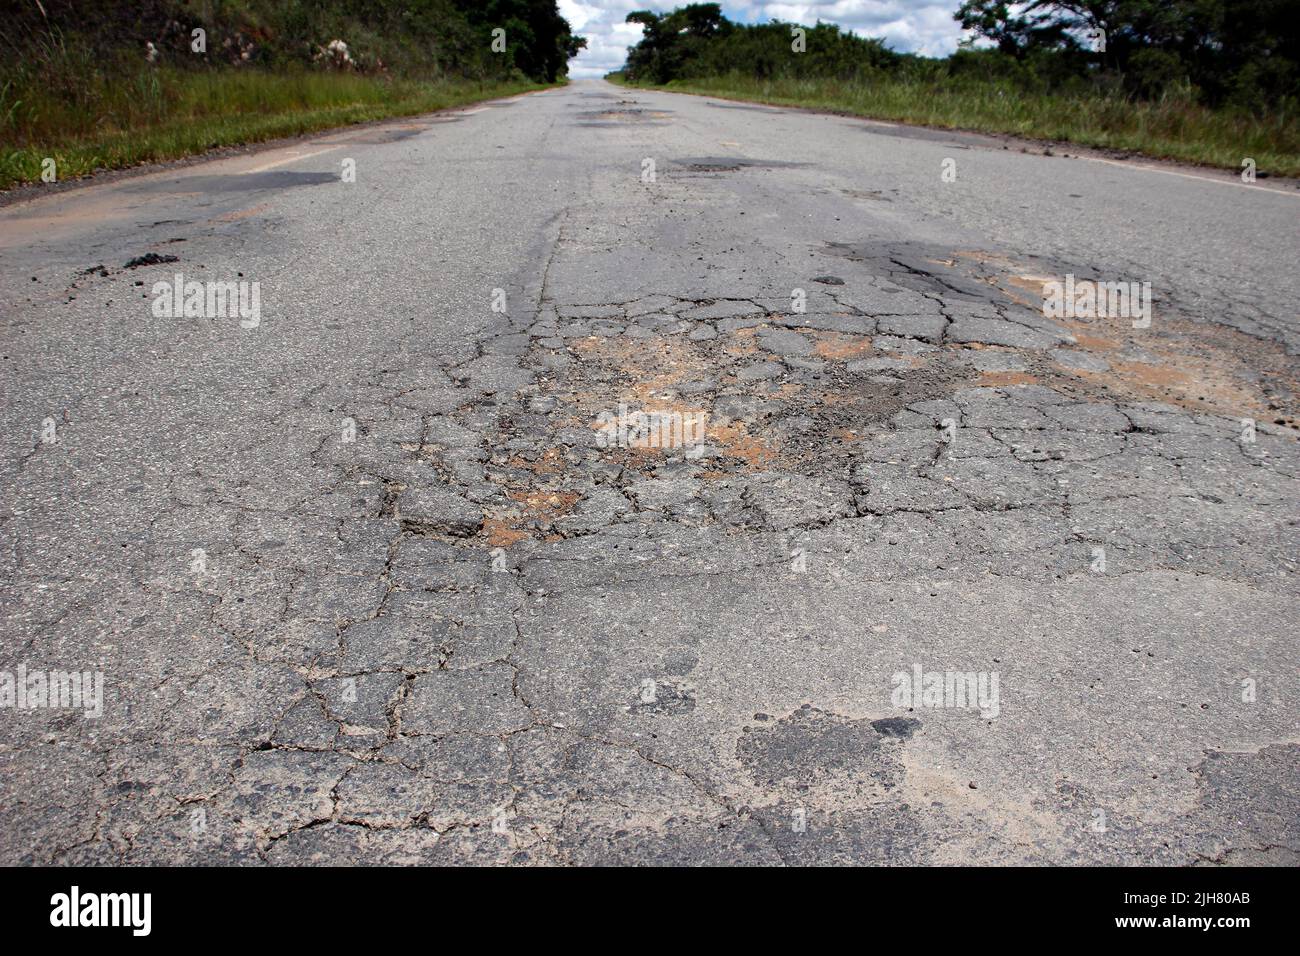 techo de carretera con asfalto defectuoso y estropeado, peligroso para el tráfico Foto de stock